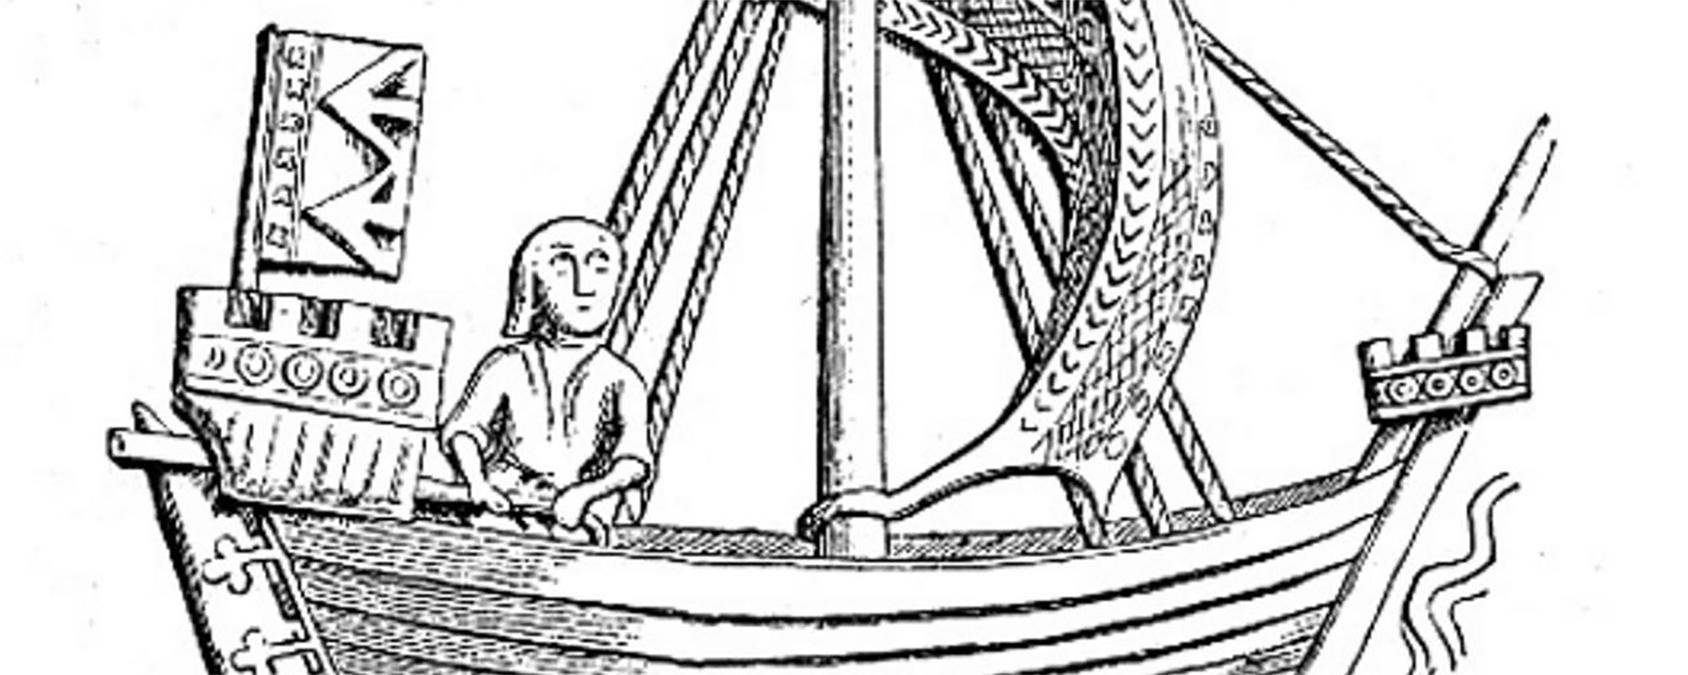 У Швеції виявили середньовічний корабель, що зазнав аварії - Новини технологій - Техно